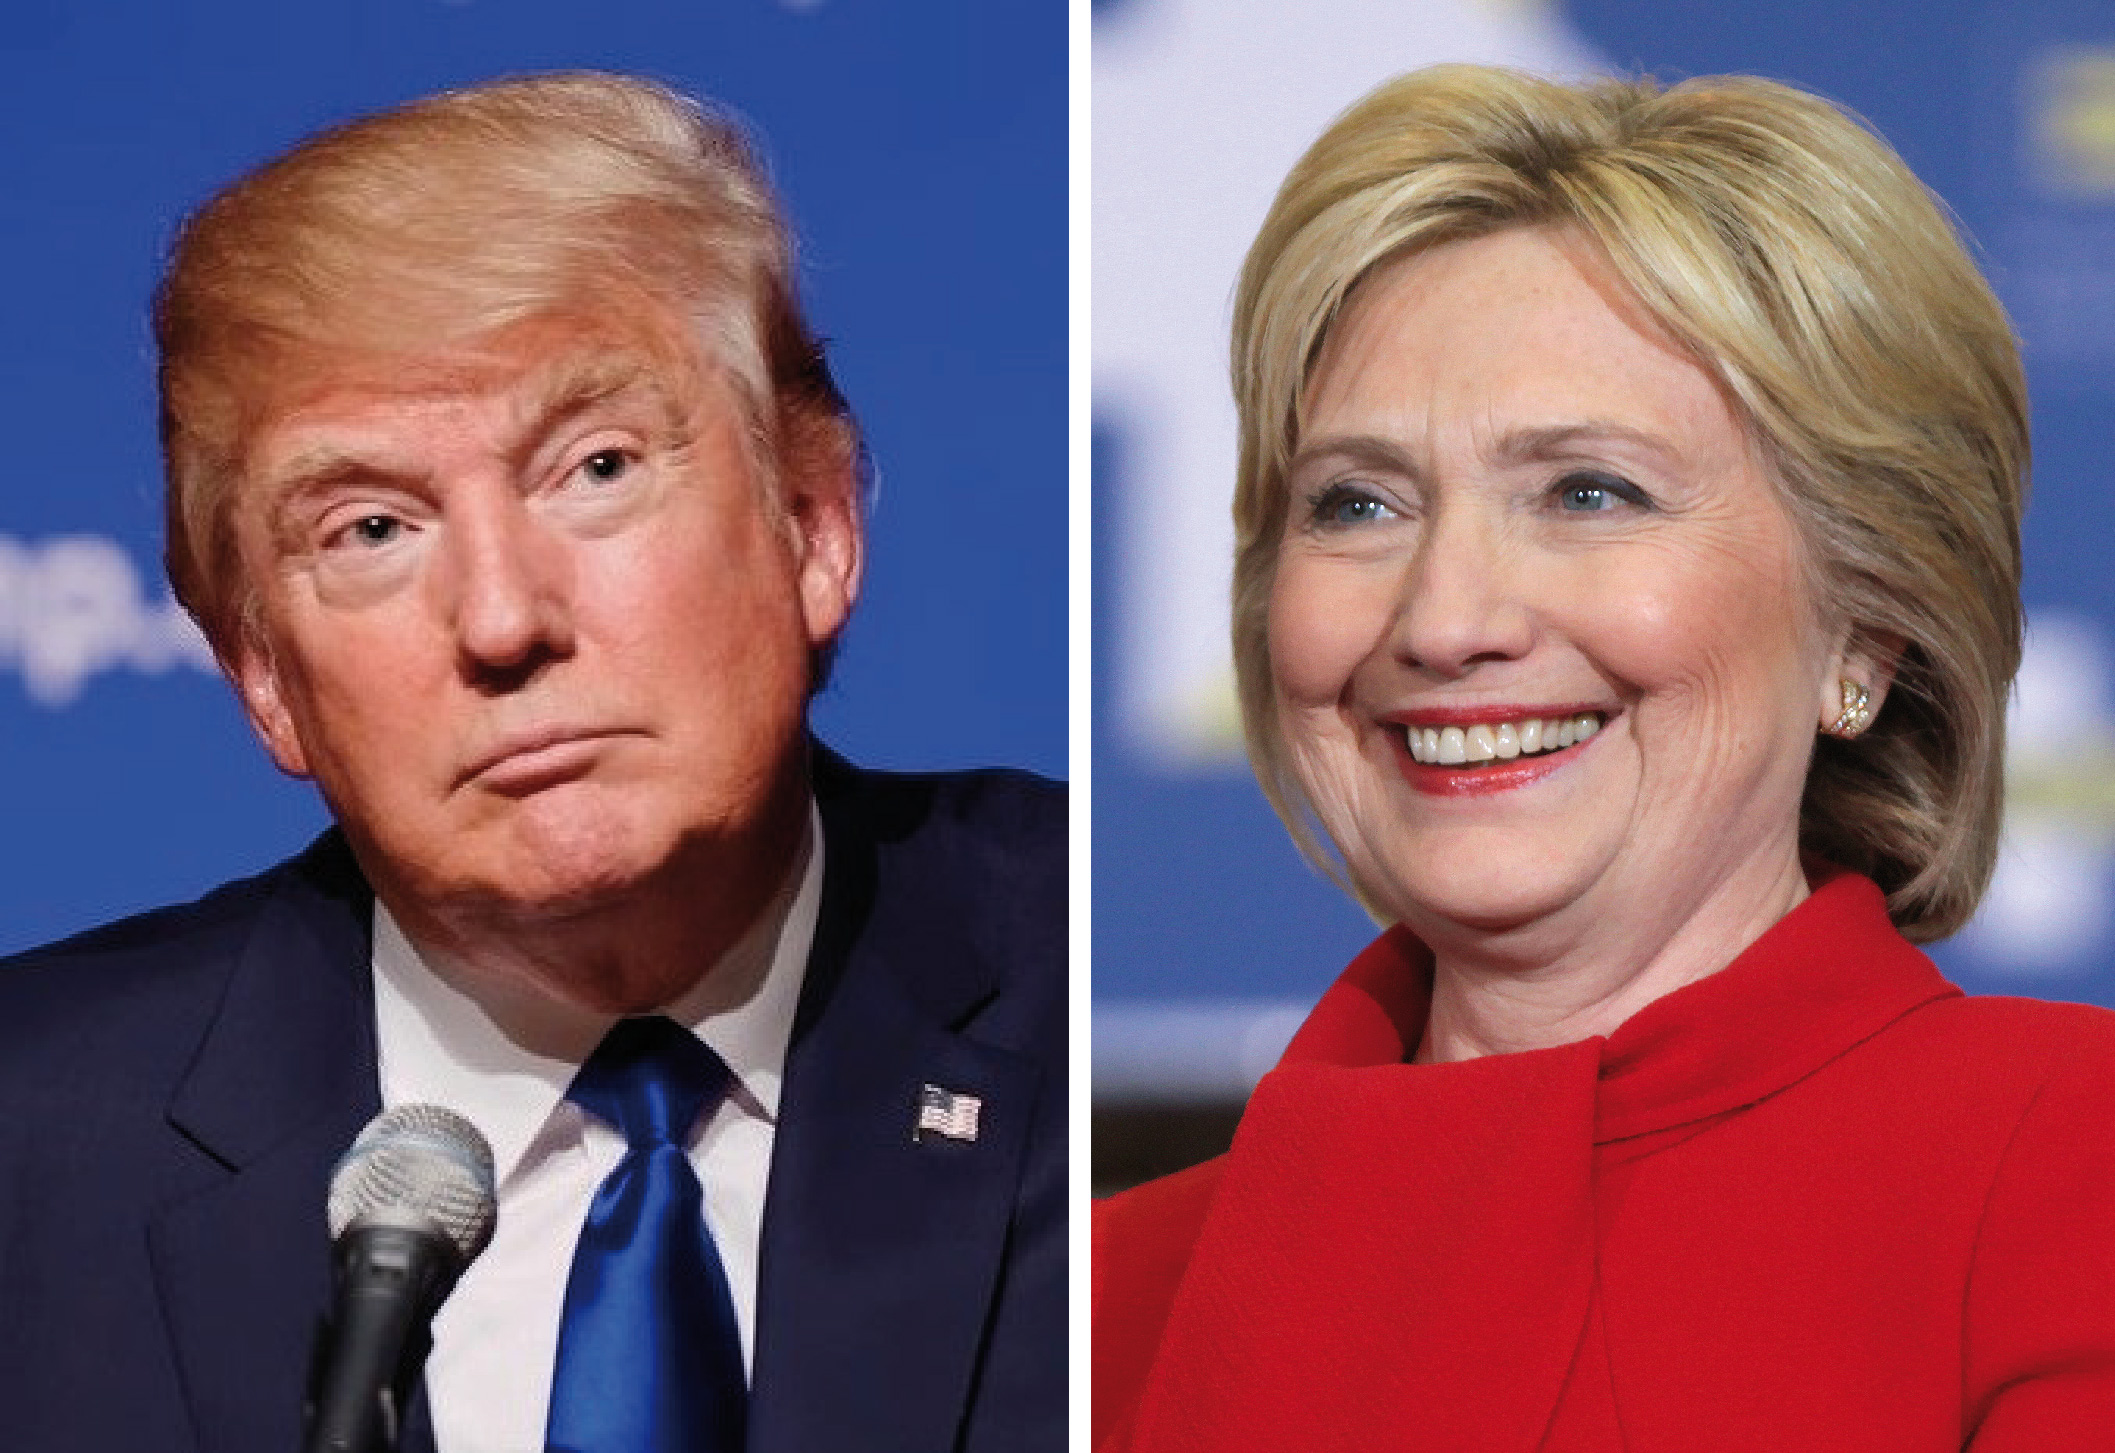 Pour les médias américains, Hillary Clinton sort victorieuse de ce deuxième débat, marqué par les coups bas et l’étalage d’affaires privées.